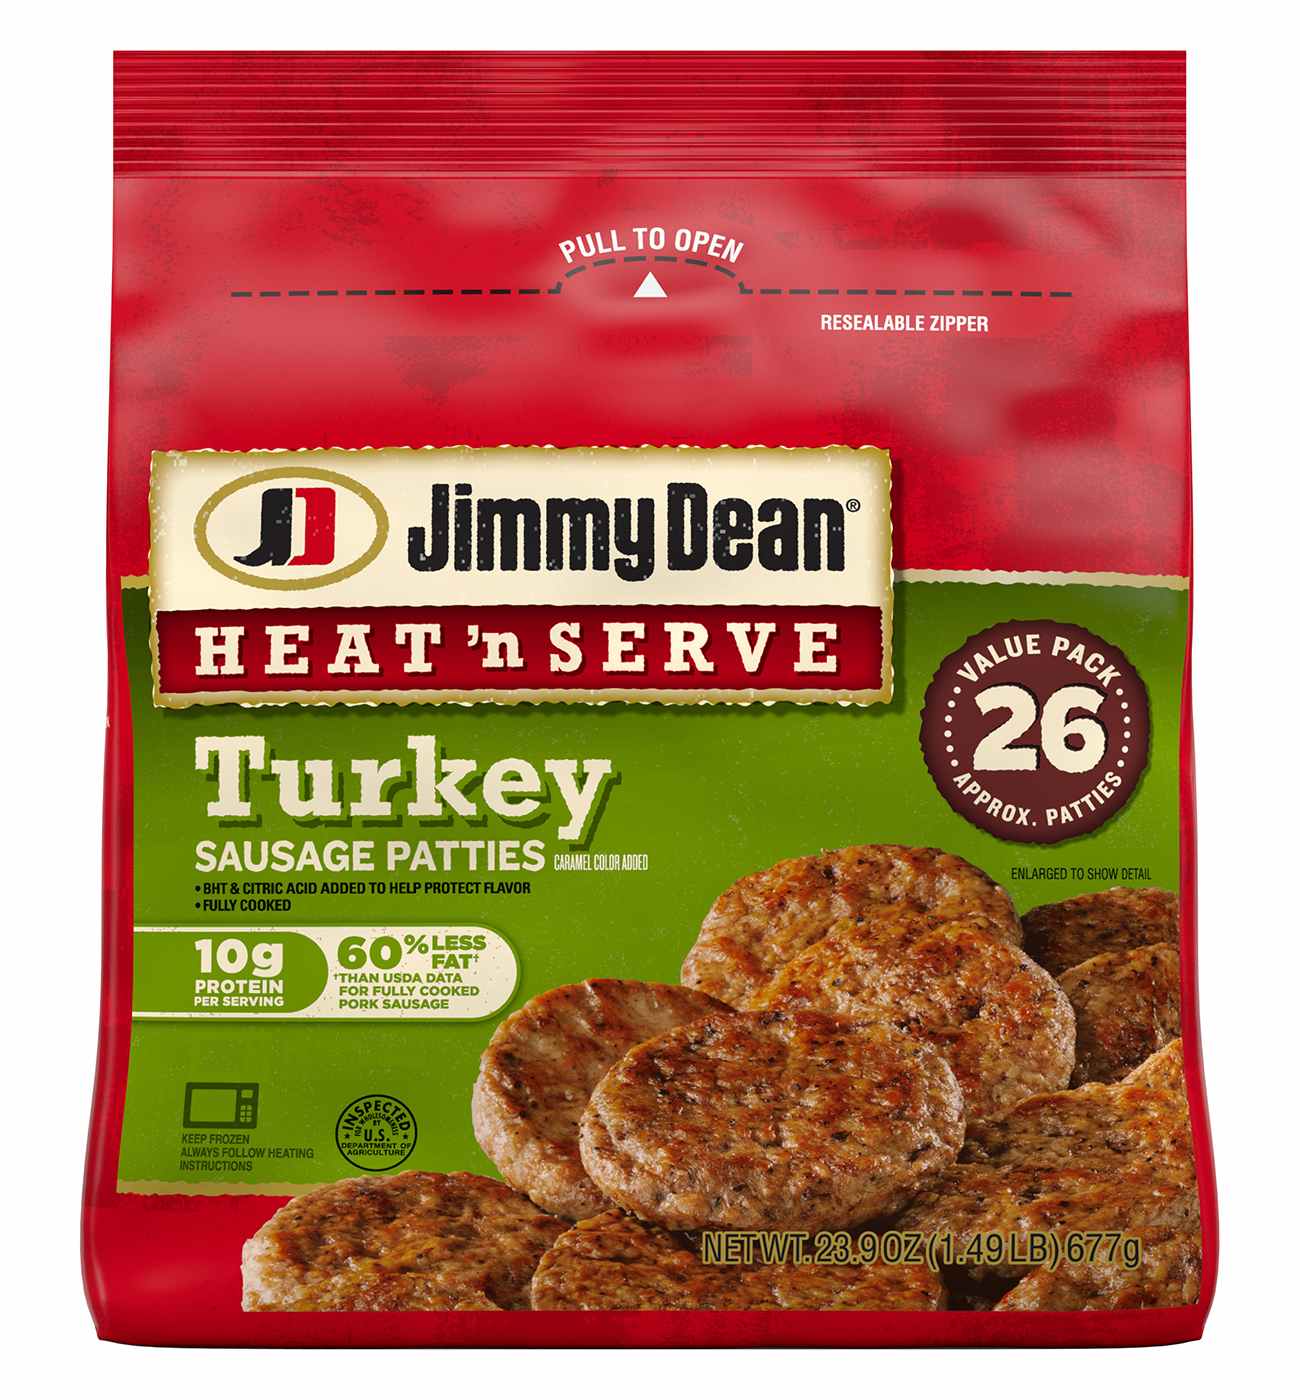 Jimmy Dean Heat 'n Serve Frozen Turkey Breakfast Sausage Patties, 26 ct; image 1 of 5